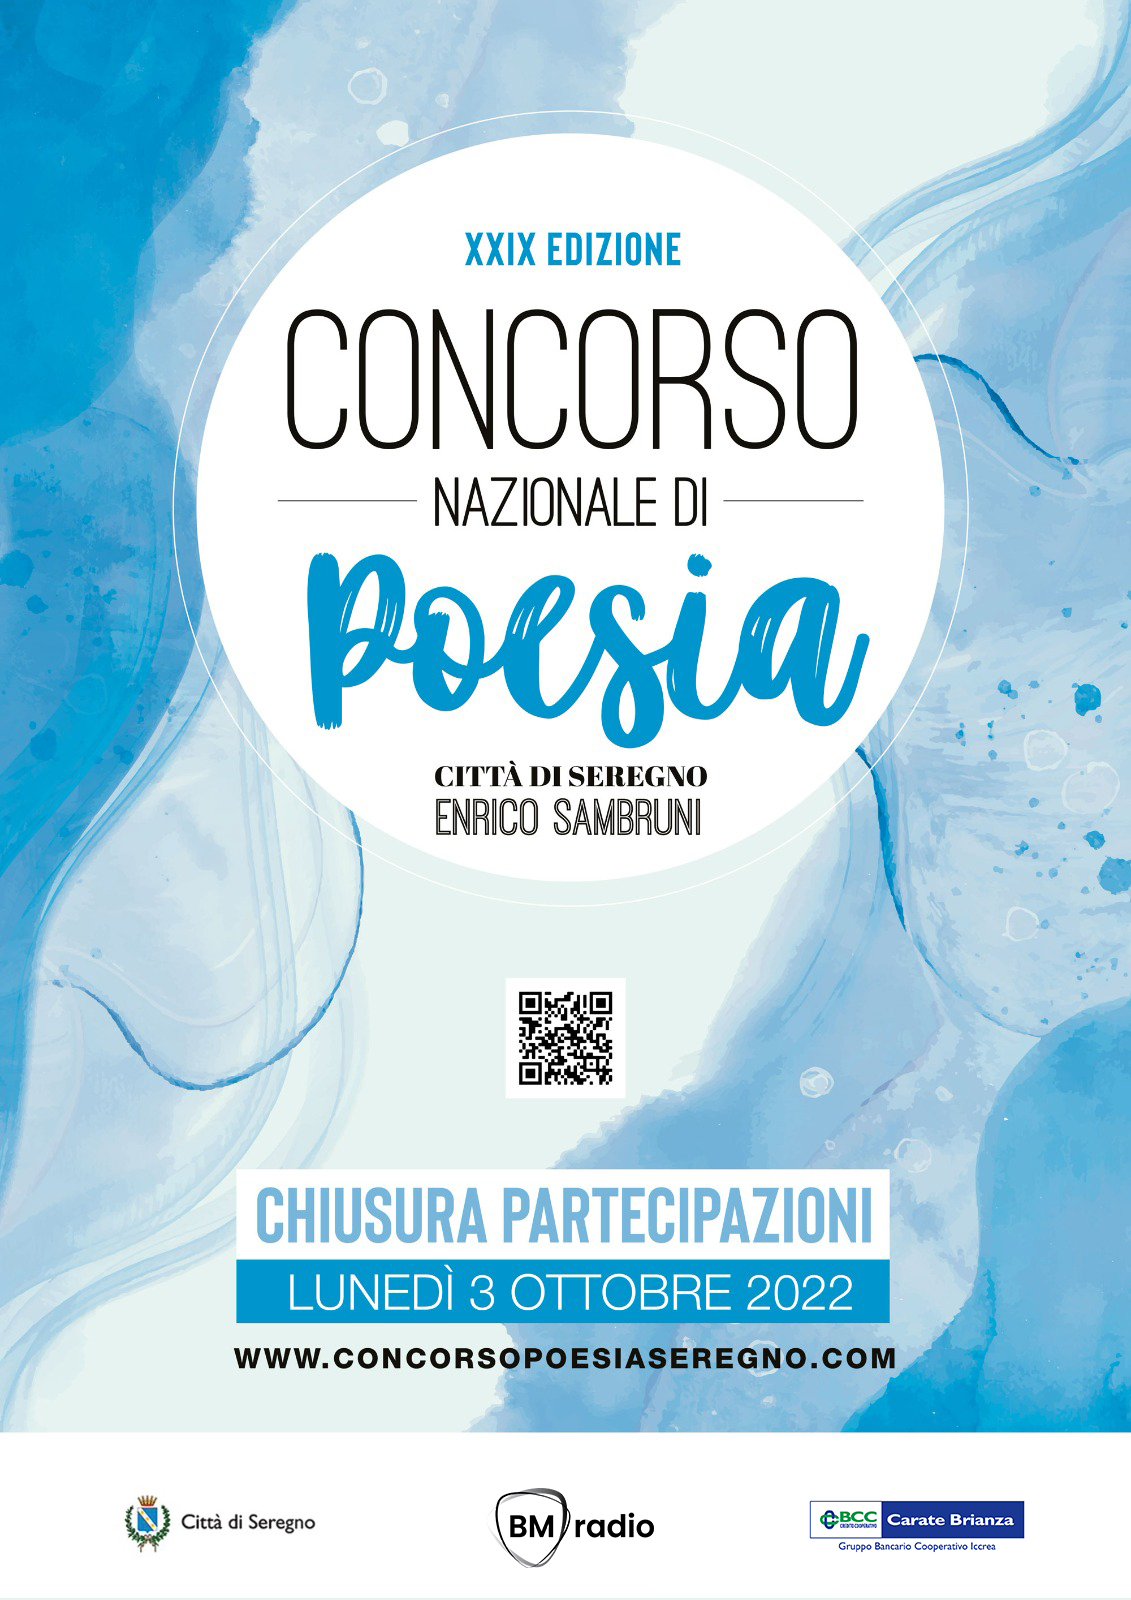 XXIX Concorso Nazionale di Poesia Città di Seregno “Enrico Sambruni” a tema libero